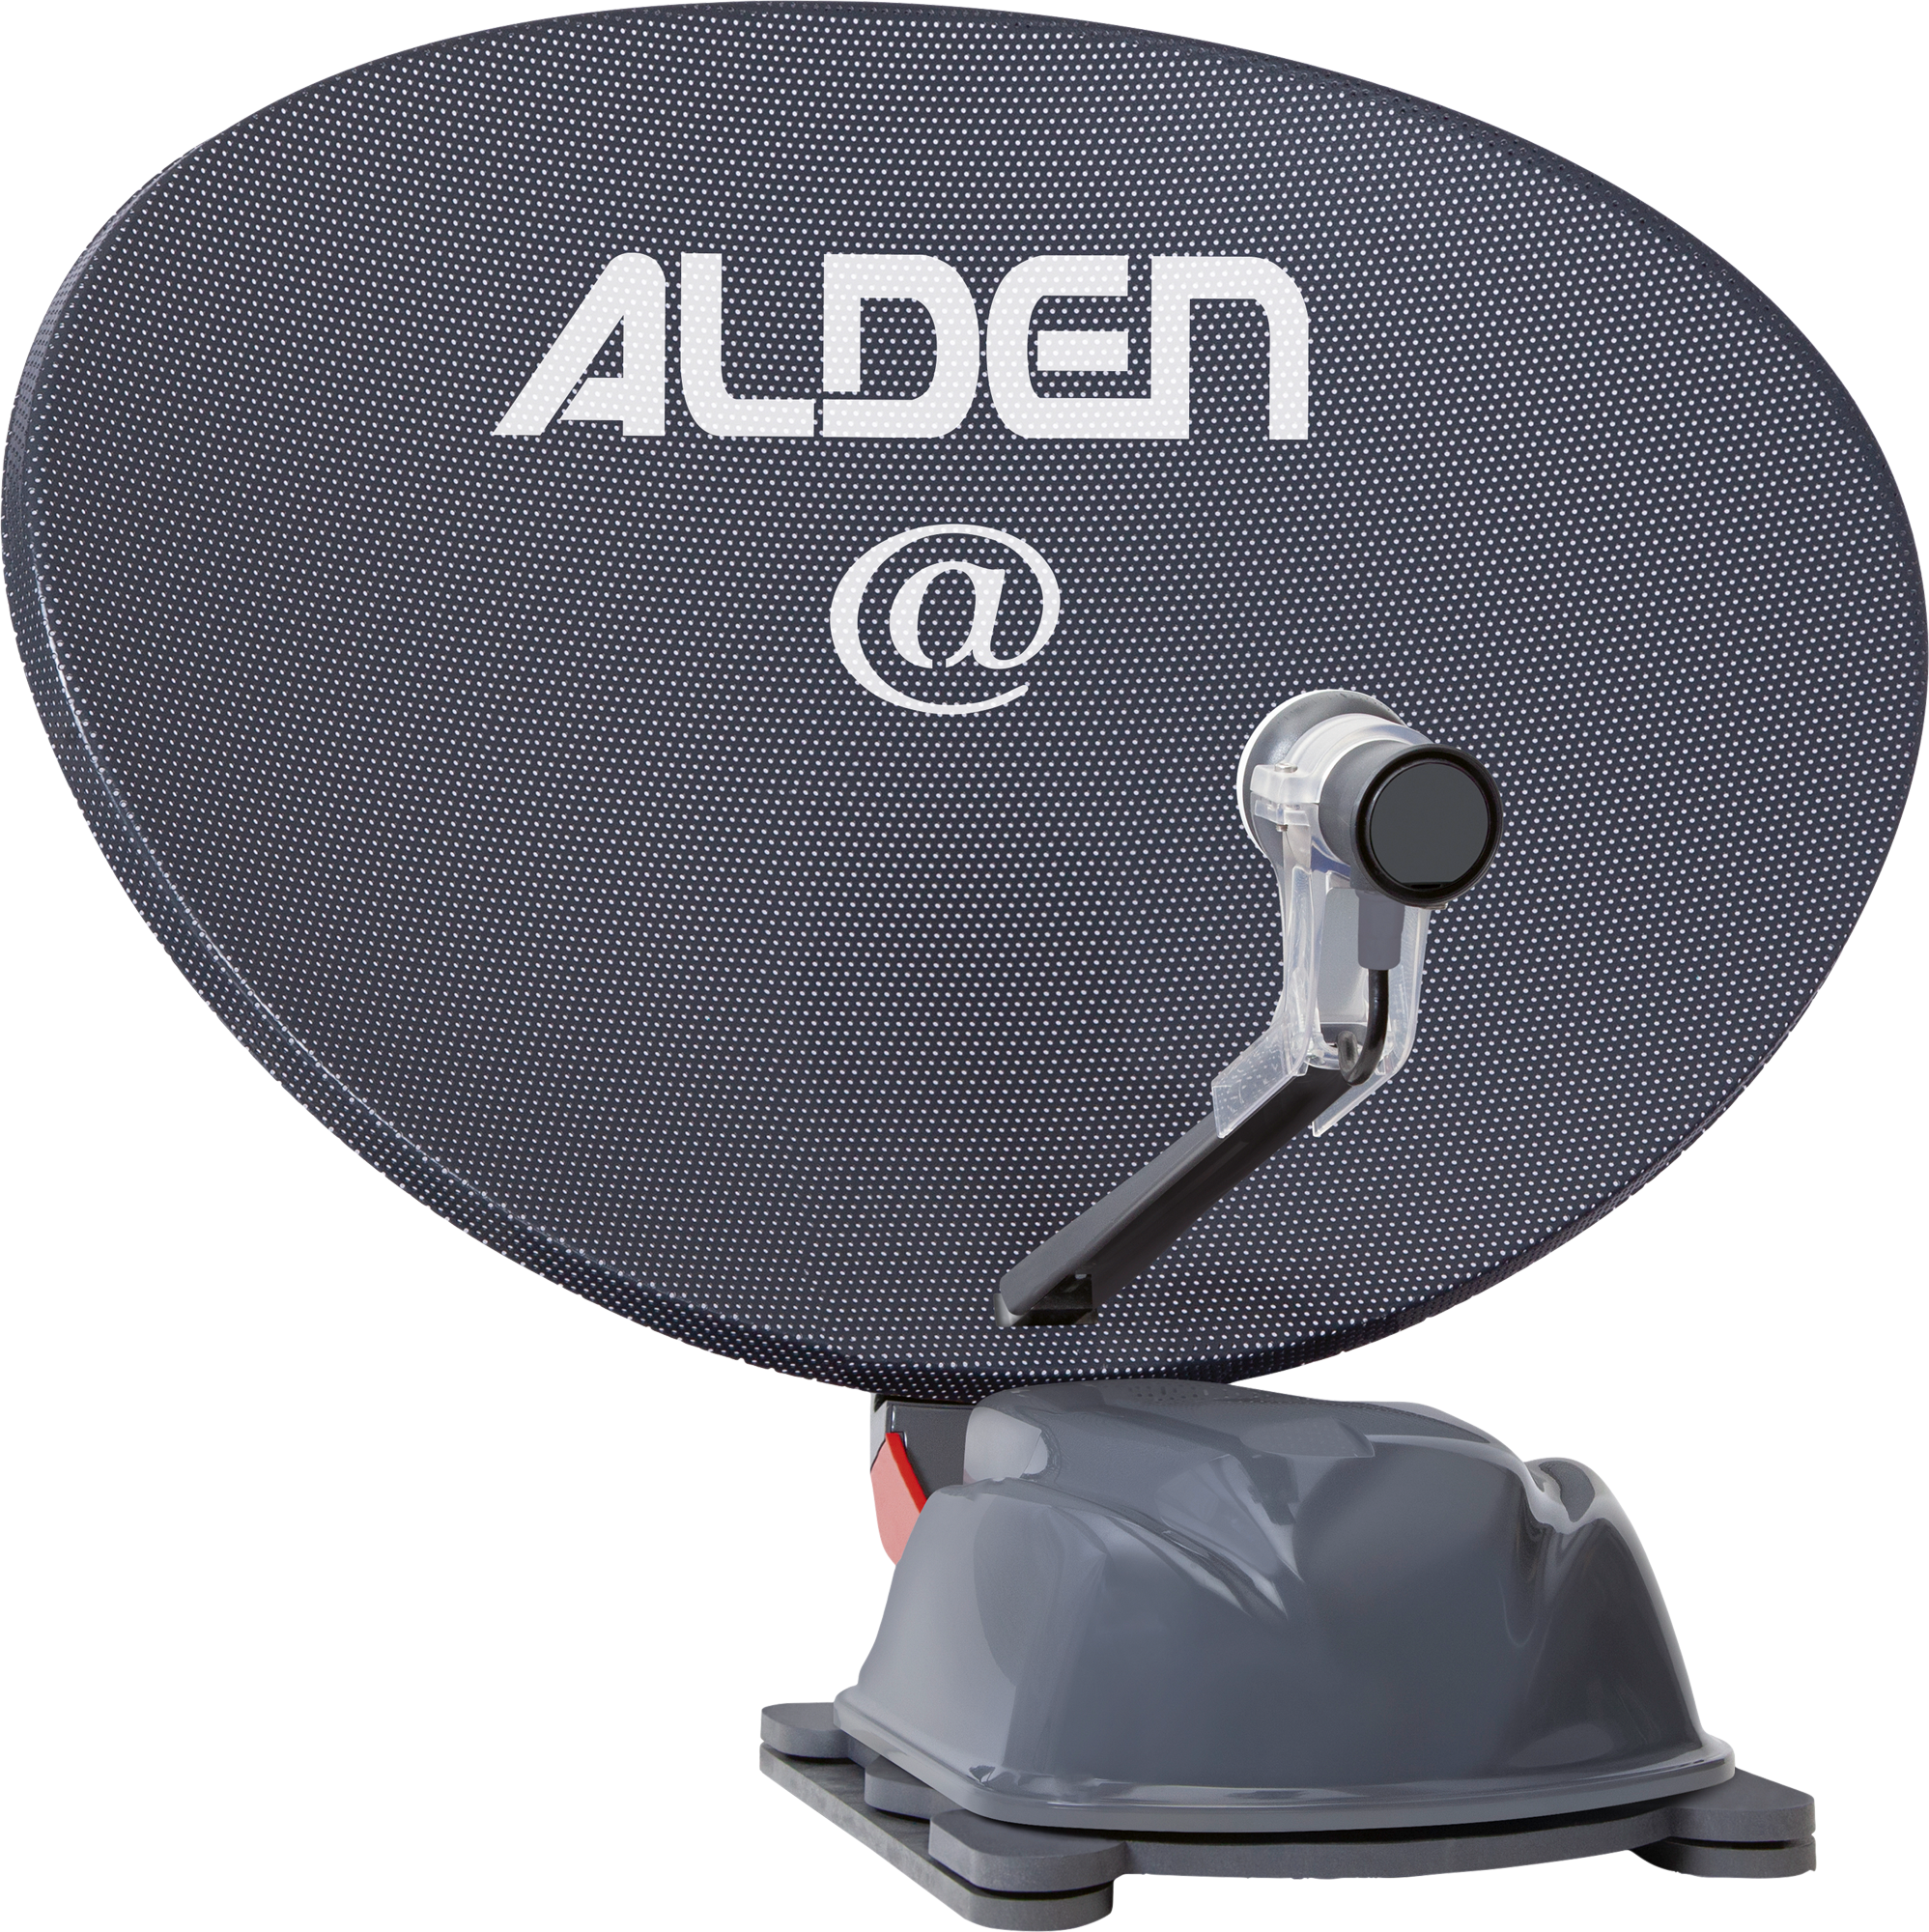 Alden AS2@ 80 HD Platinium vollautomatische Satellitenanlage inklusive S.S.C. HD Steuermodul / LTE Antenne / Smartwide LED TV 22 Zoll